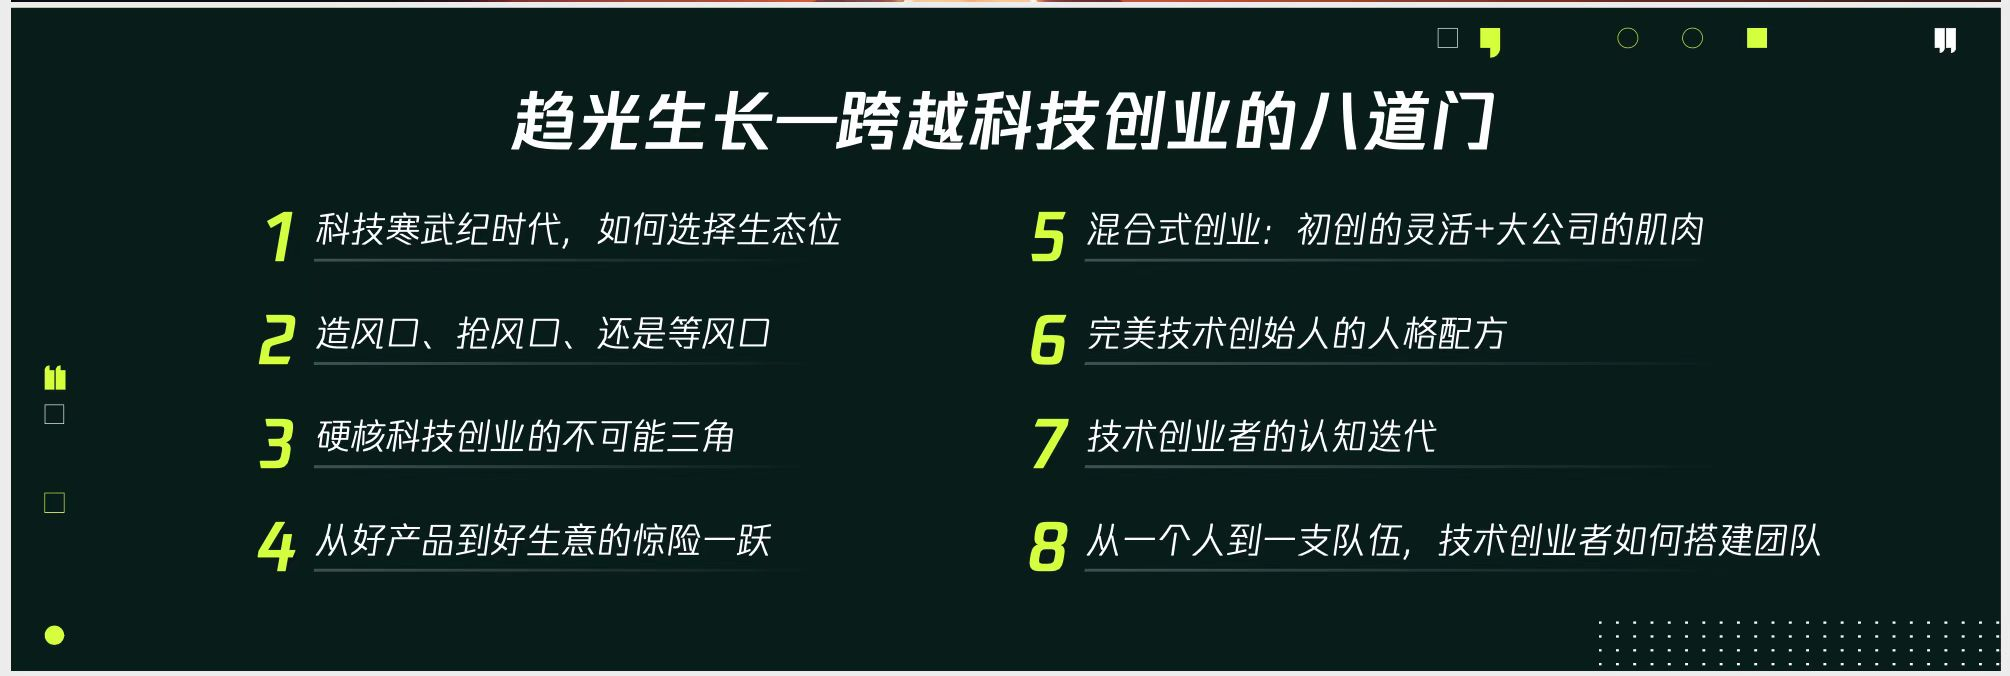 腾讯青腾Talk于北京召开 探索数实融合六大赛道